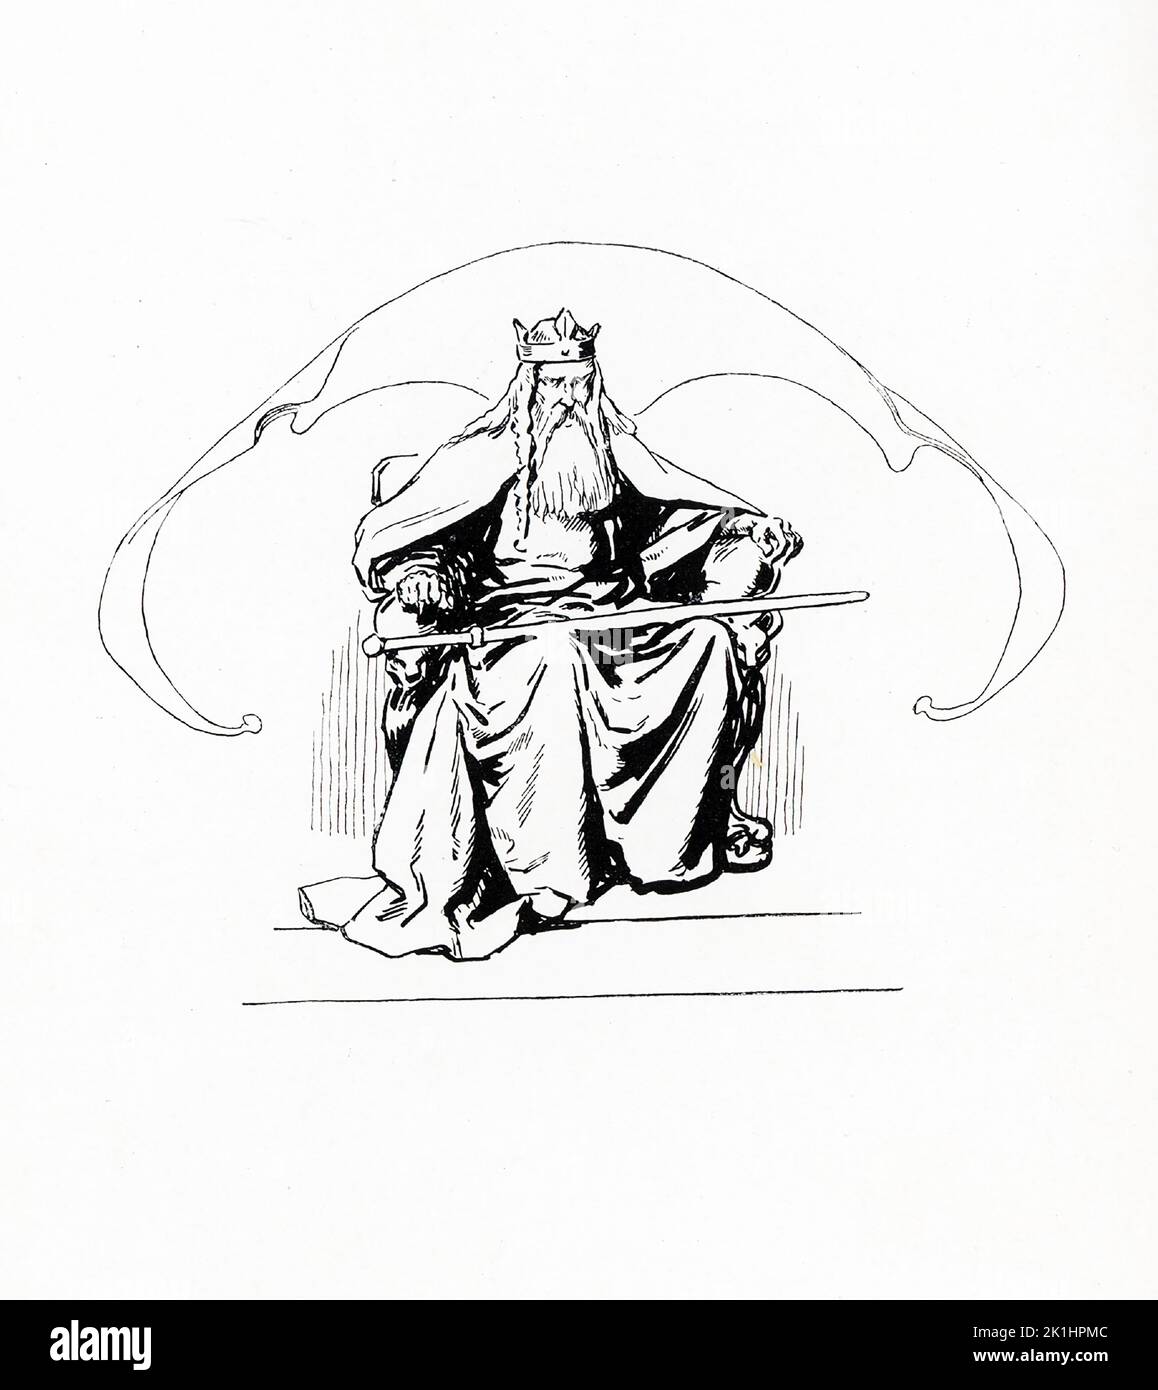 Nach der nordischen Mythologie war Odin einer der Hauptgötter und Herrscher von Asgard (dem Land oder der Hauptstadt der nordischen Götter). Diese Illustration von Gordon Browne stammt aus dem Jahr 1913. Stockfoto